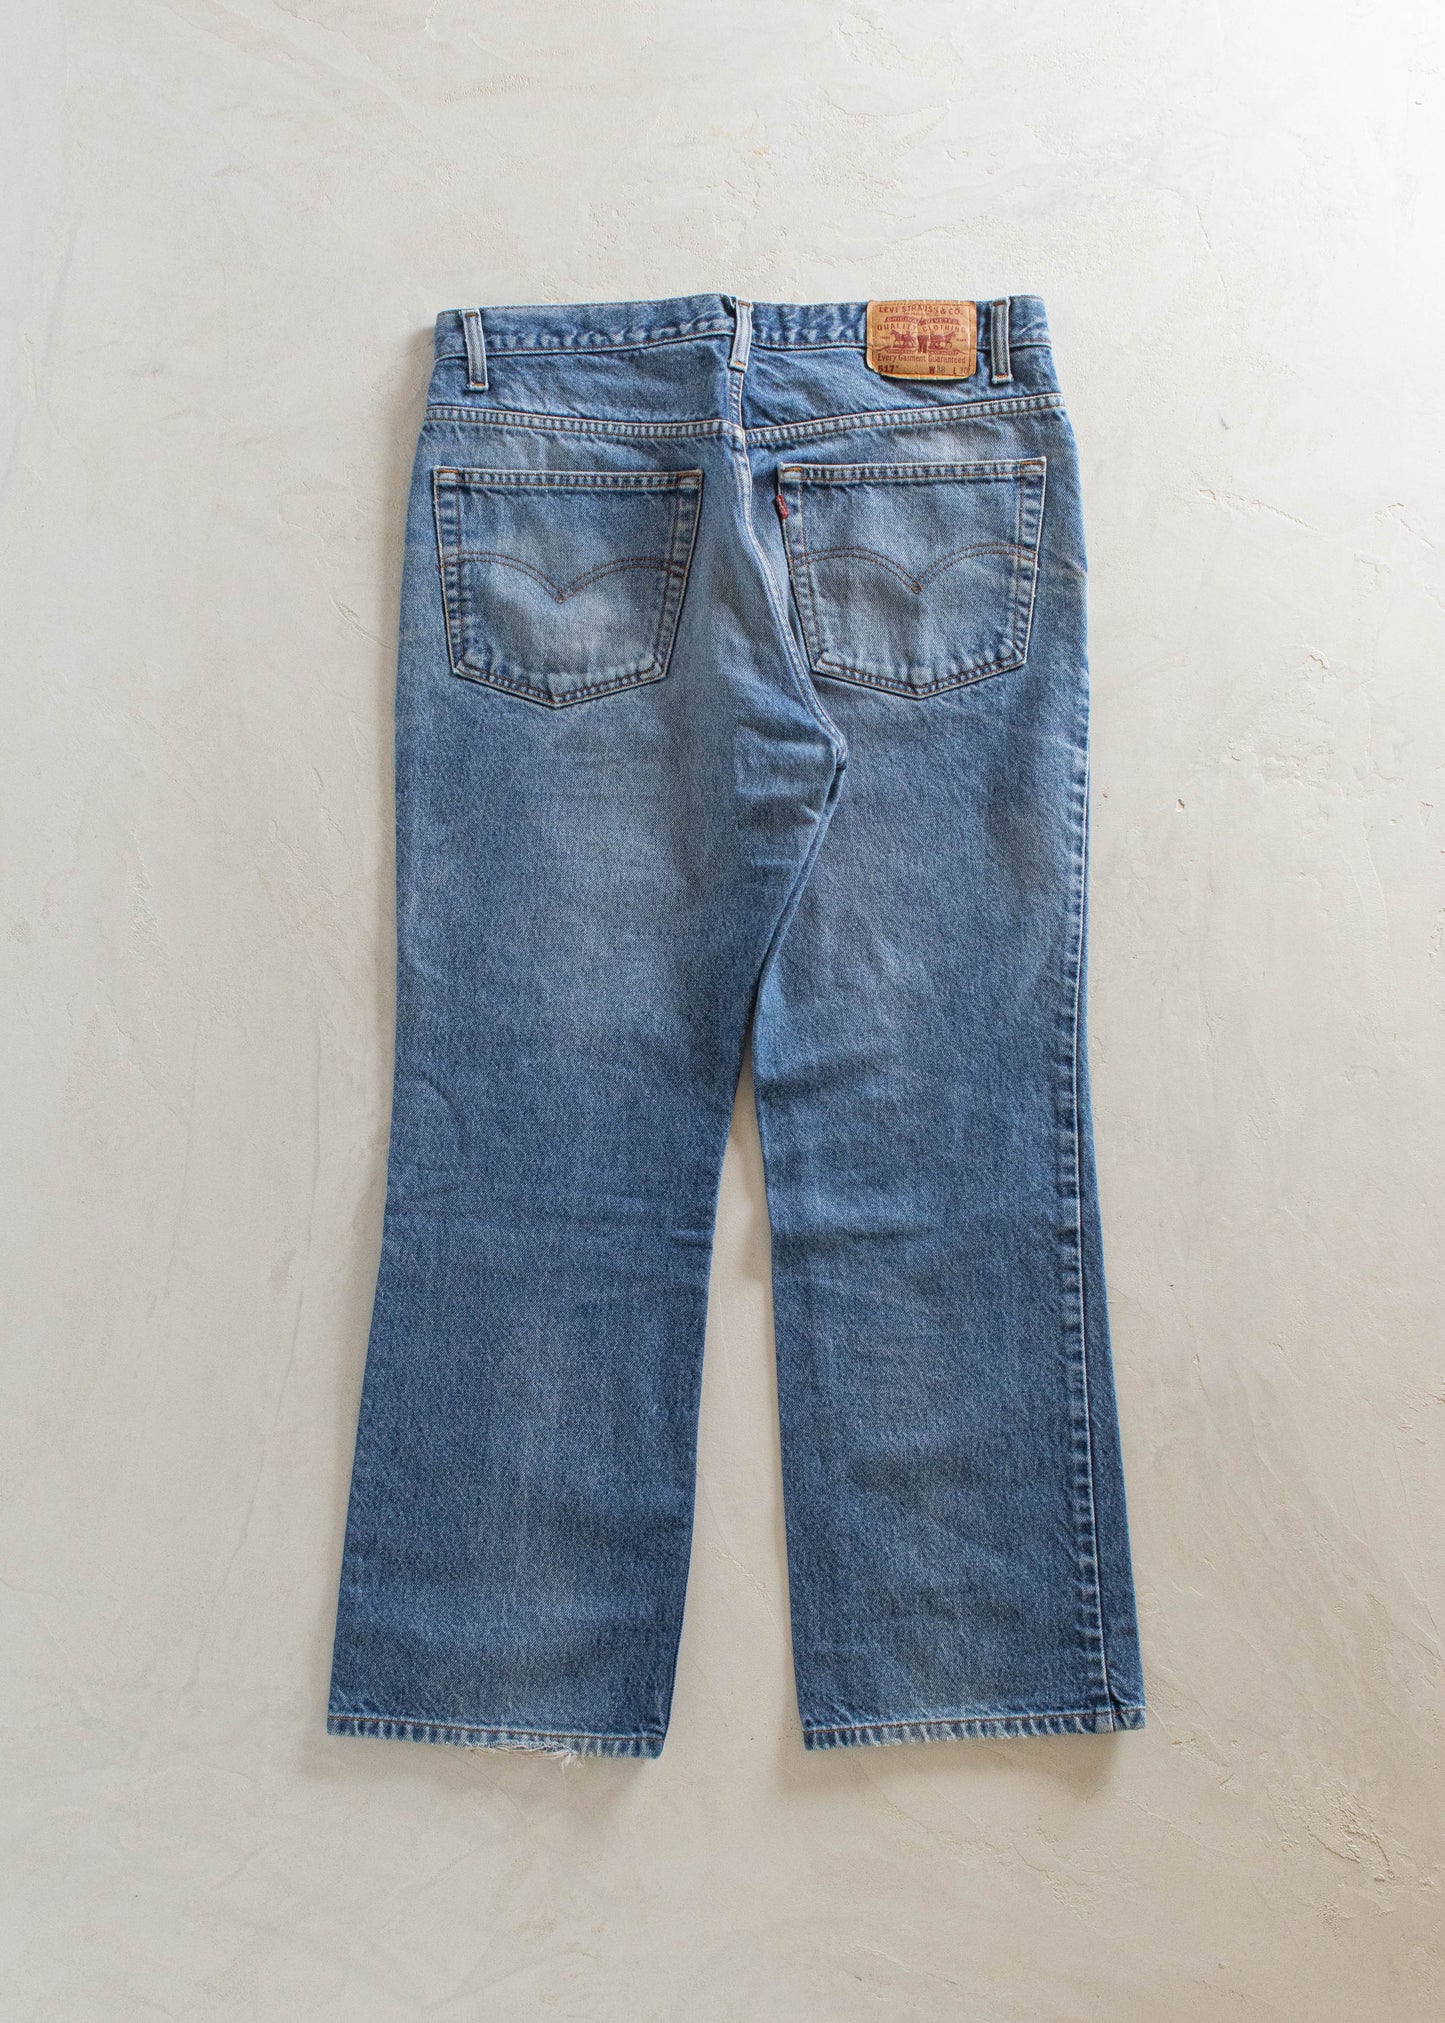 1980s Levi's 517 Jeans Size Women's 31 Men's 33